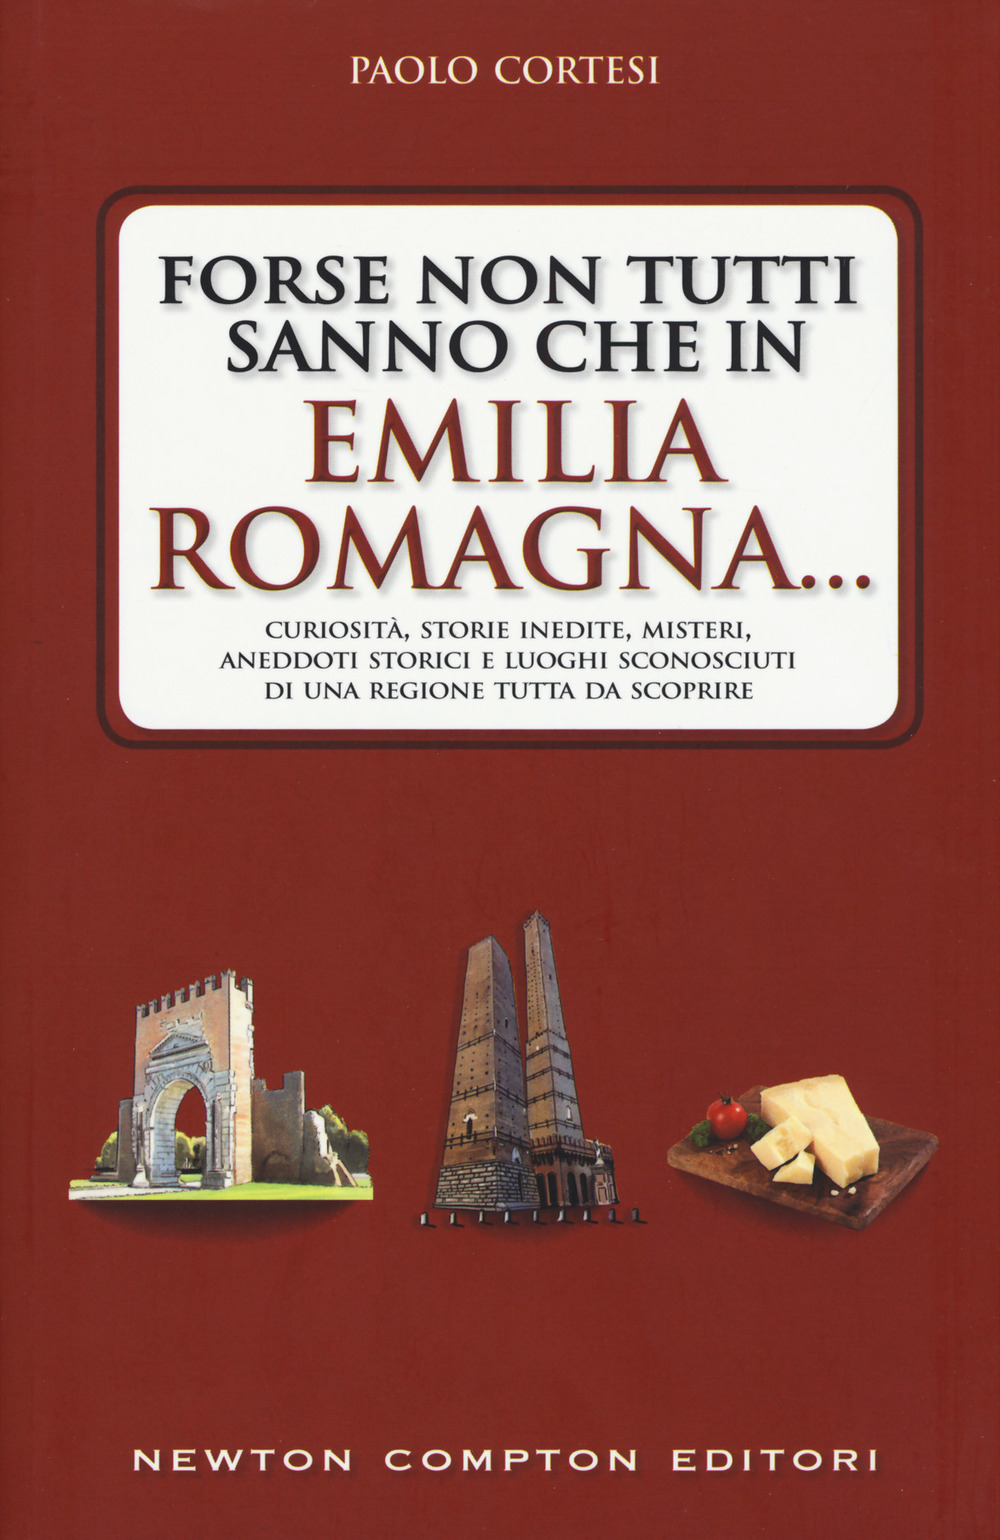 Forse non tutti sanno che in Emilia Romagna... Curiosità, storie inedite, misteri, aneddoti storici e luoghi sconosciuti di una regione tutta da scoprire